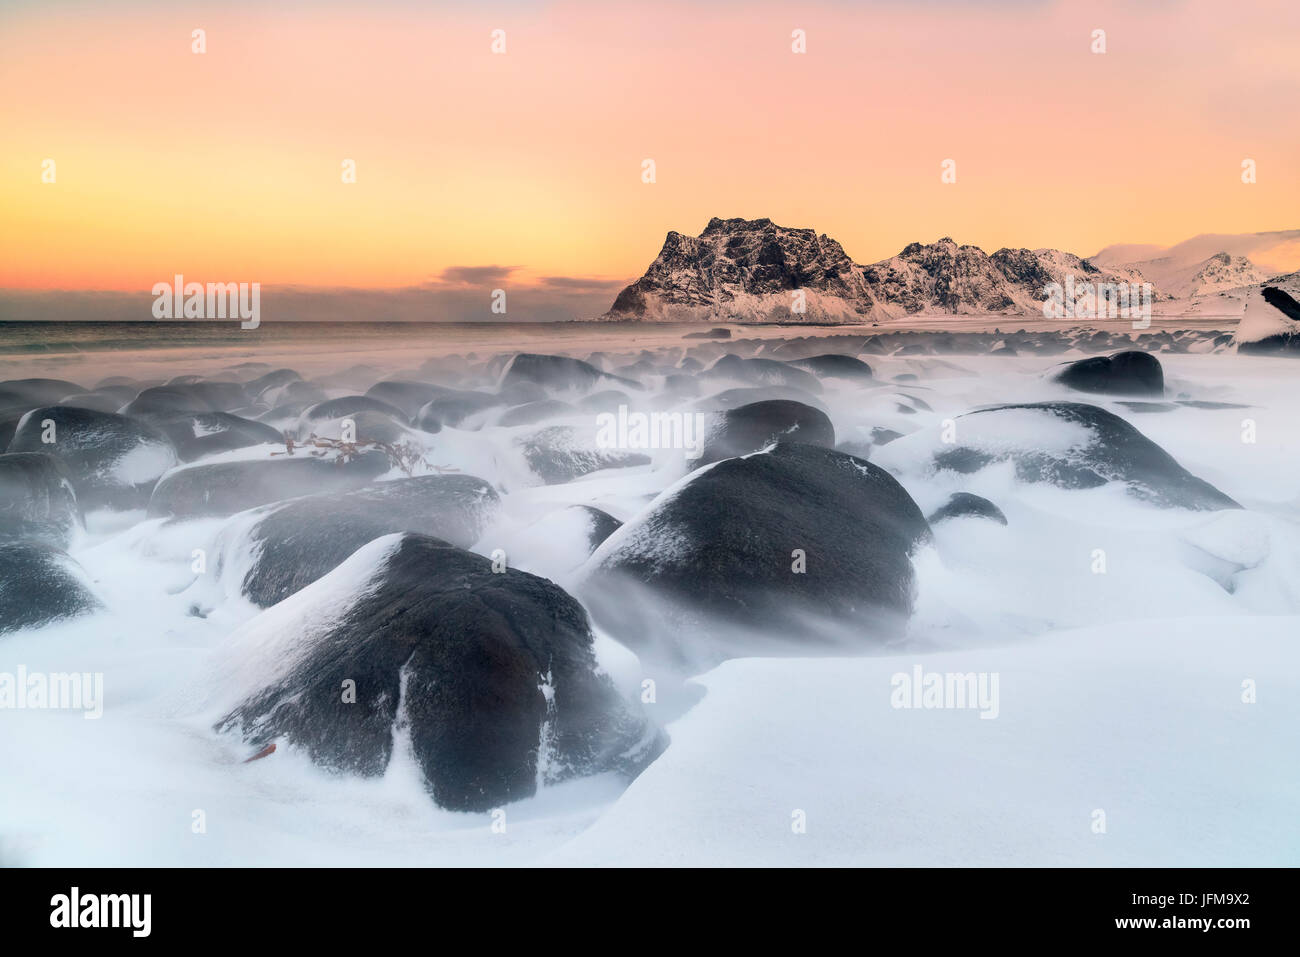 Utakleiv beach, îles Lofoten, Norvège La plage Utakleiv tir à l'aube, après une chute de neige Janvier 2015 Banque D'Images